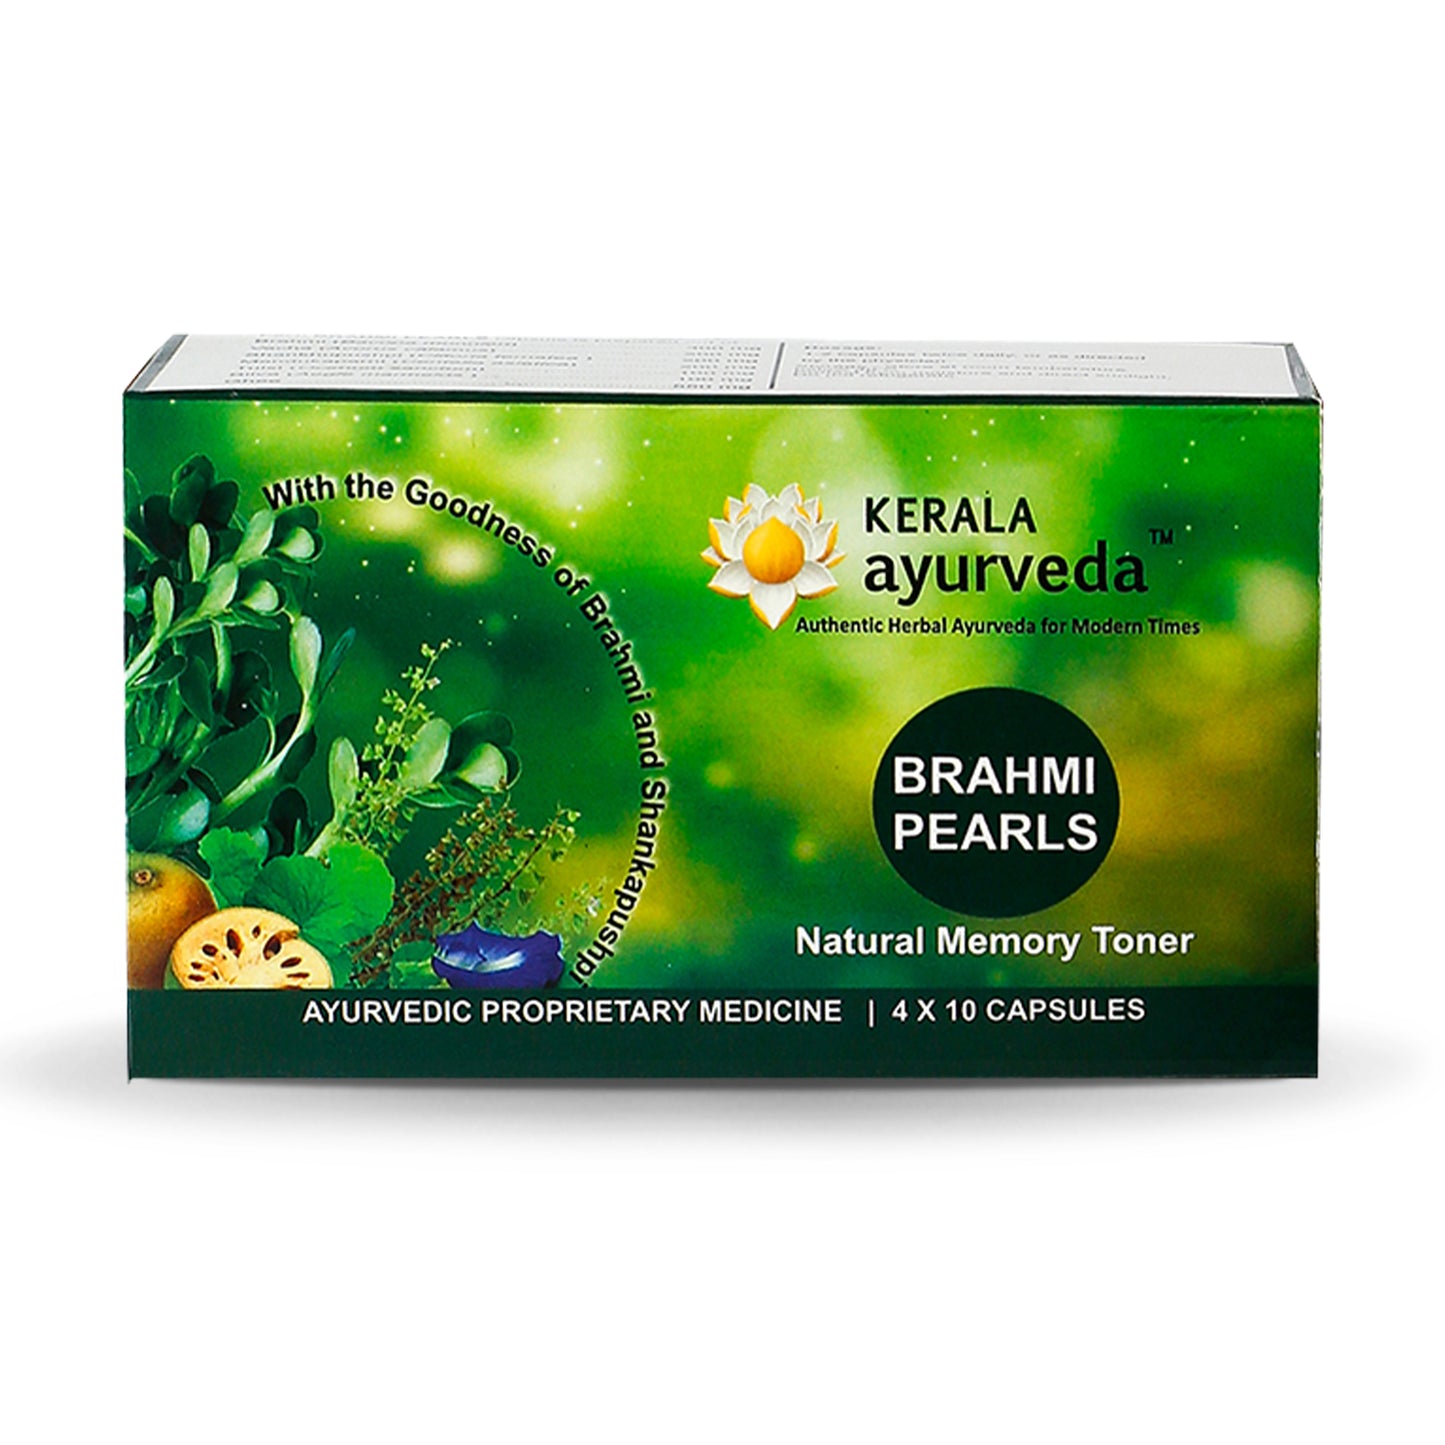 Kerala Ayurveda Brahmi, 40 Pearls